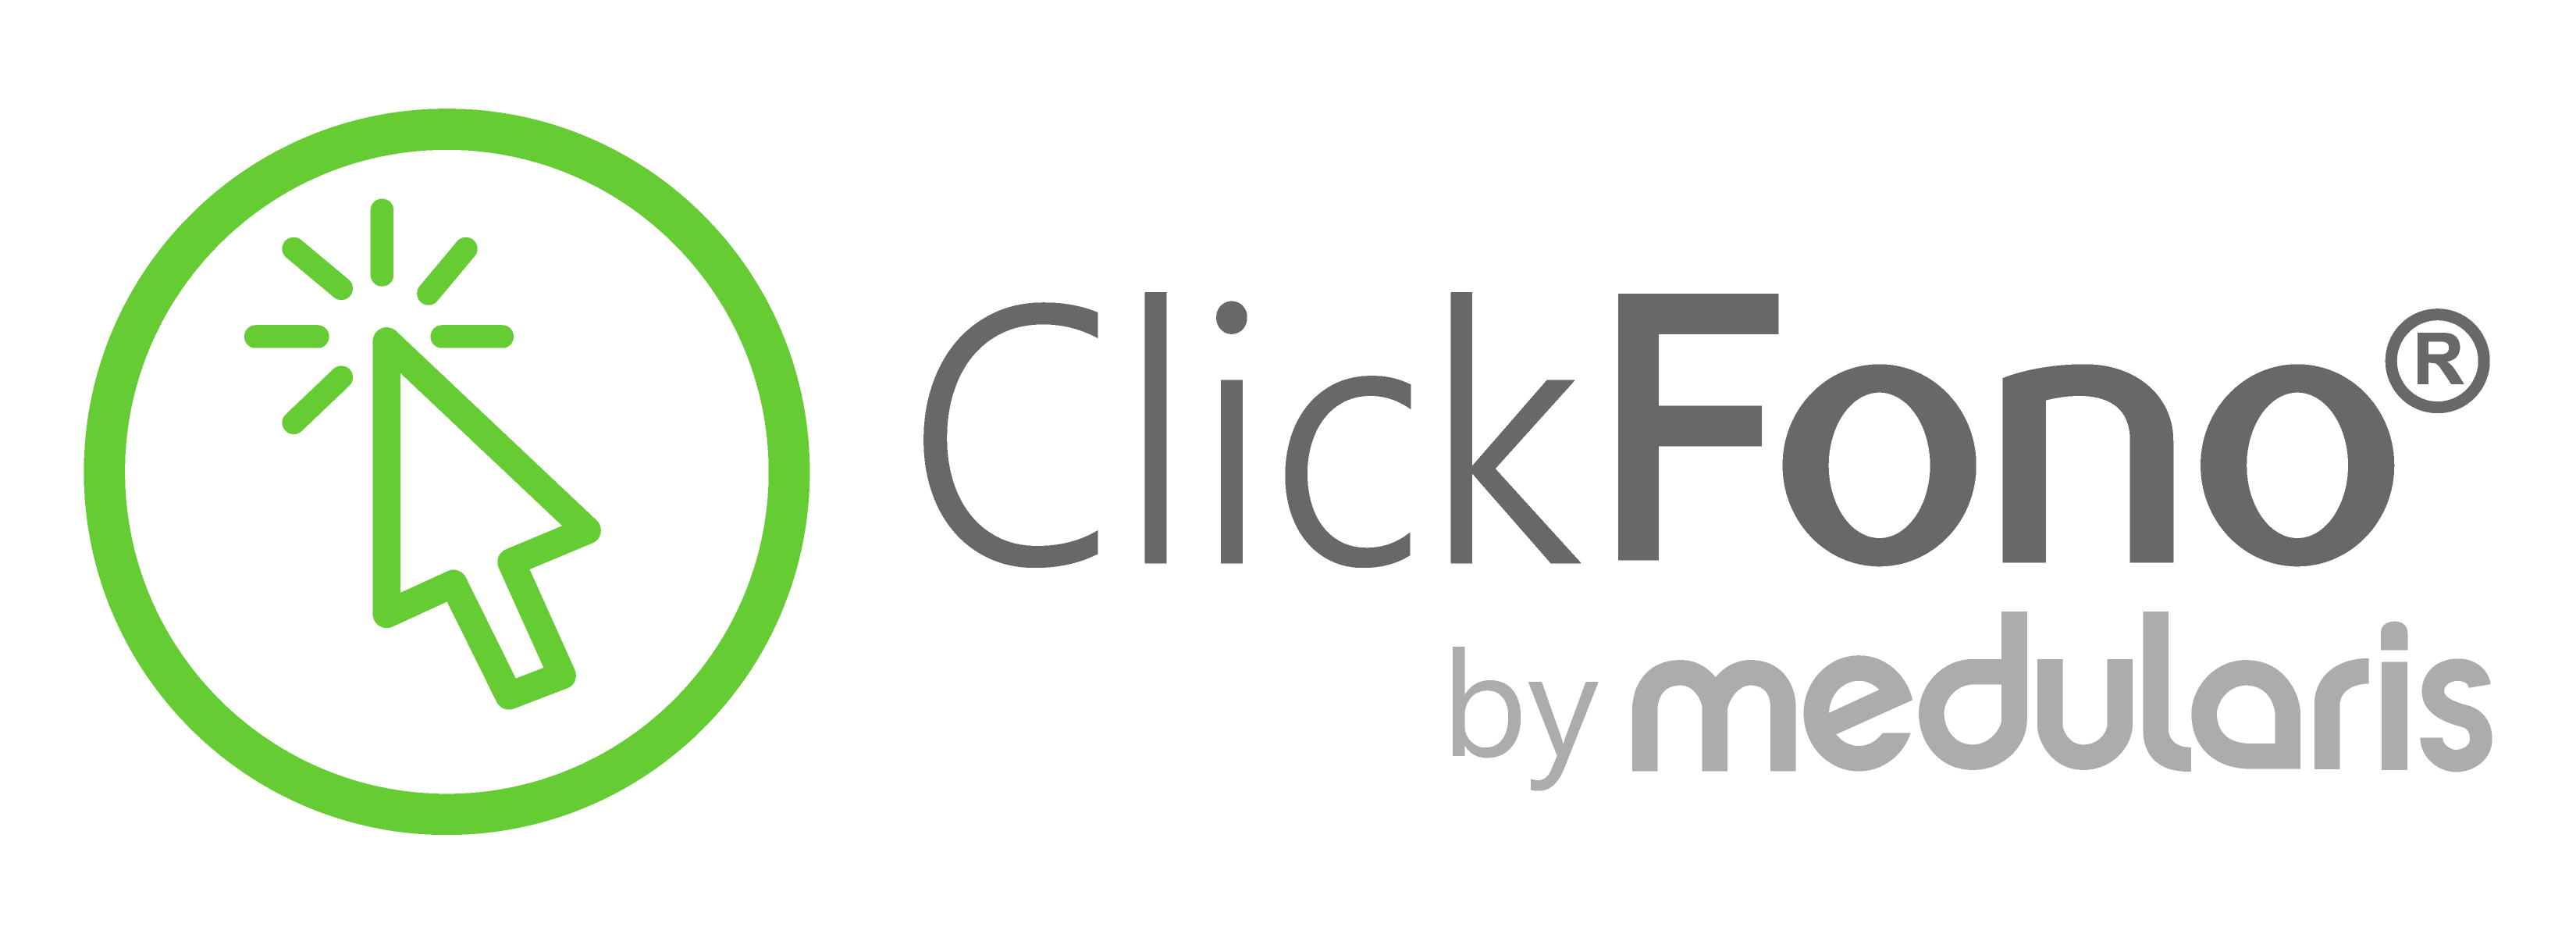 logo clickfono